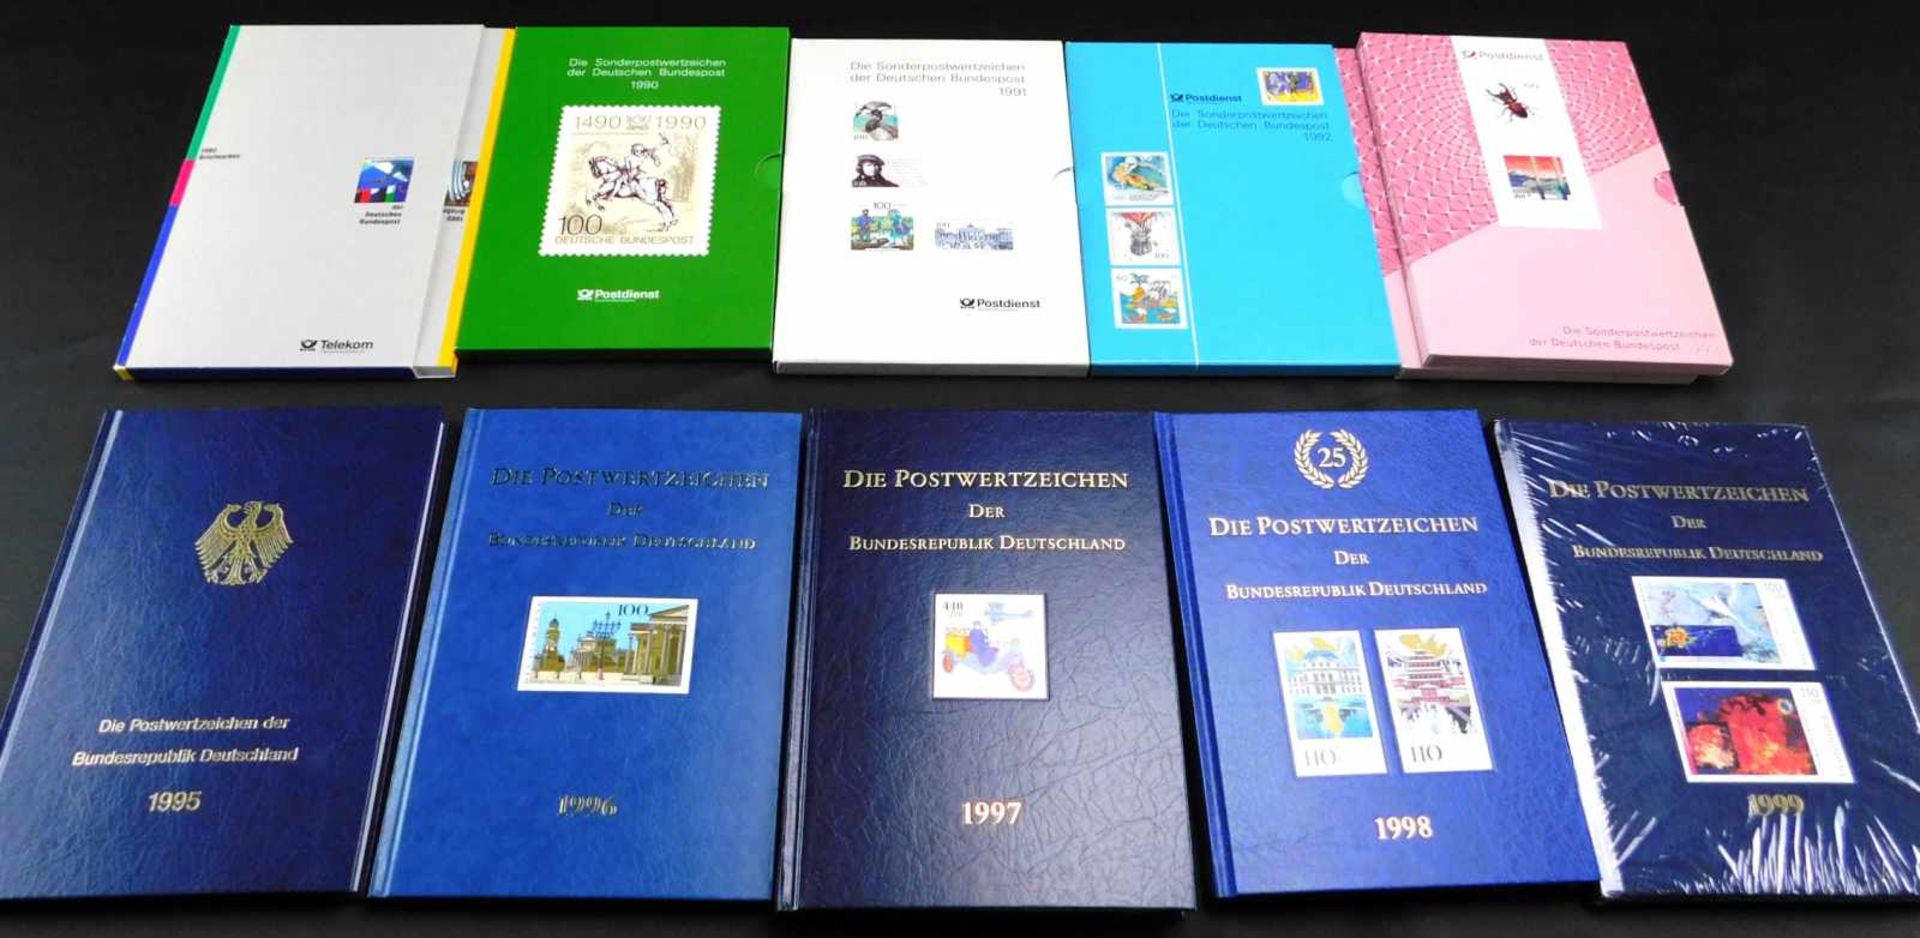 Konvolut 12 Alben, Briefmarken, Die Postwertzeichen der BRD, 1989 - 1993, 1995 - 1999, 1993 u.1997 - Image 2 of 4